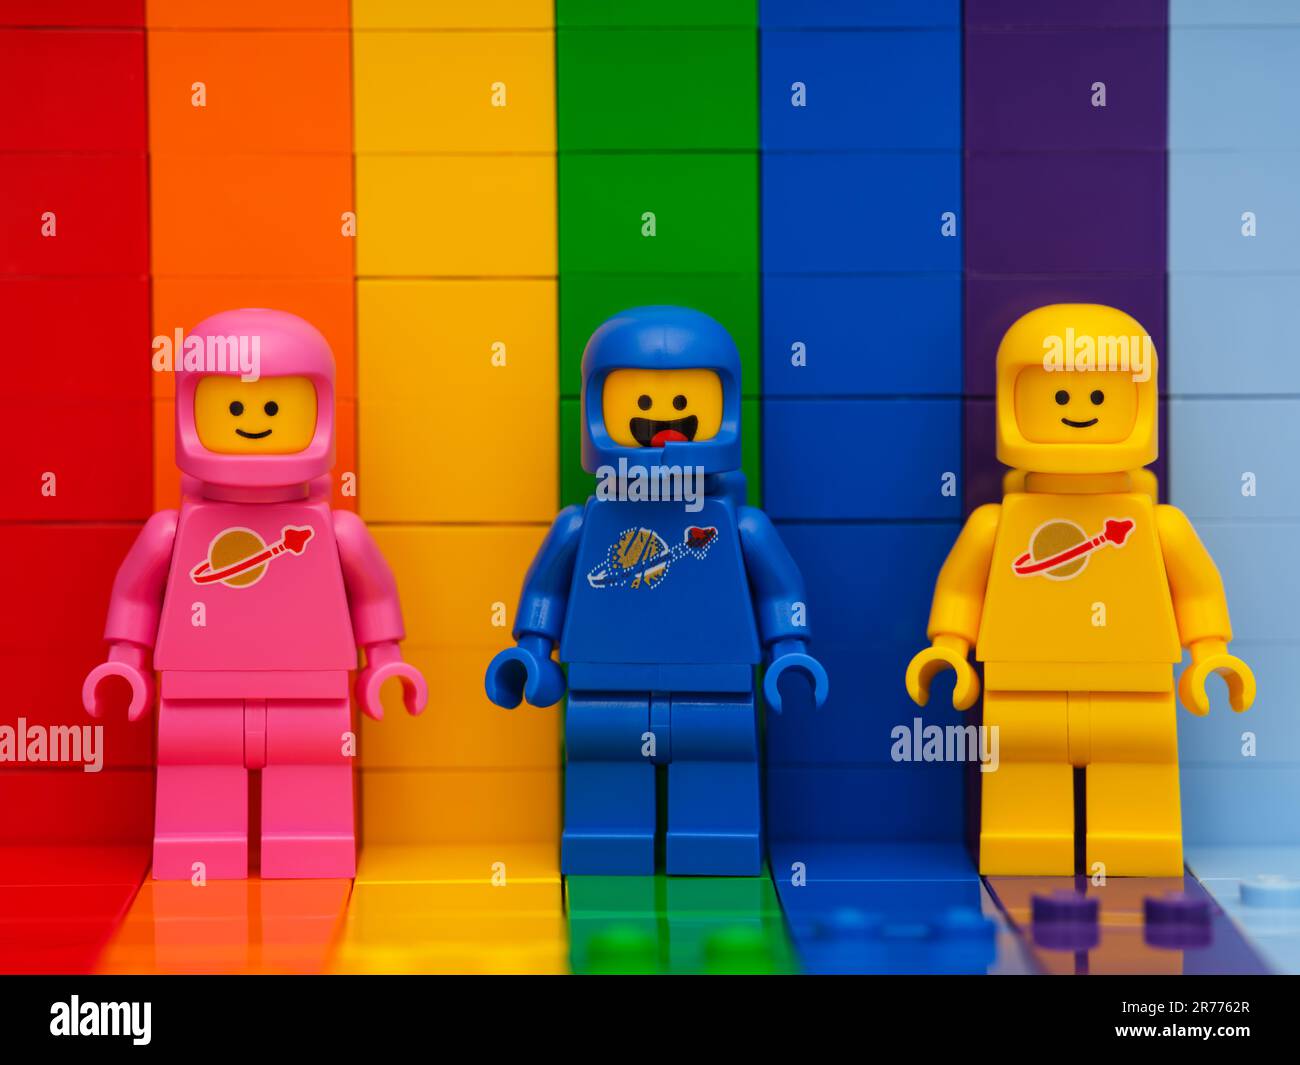 Tambov, Russische Föderation - 07. November 2022 drei Lego-Astronauten-Minifiguren - Benny, Lenny, Kenny, die auf einem Regenbogen-Hintergrund stehen. Stockfoto